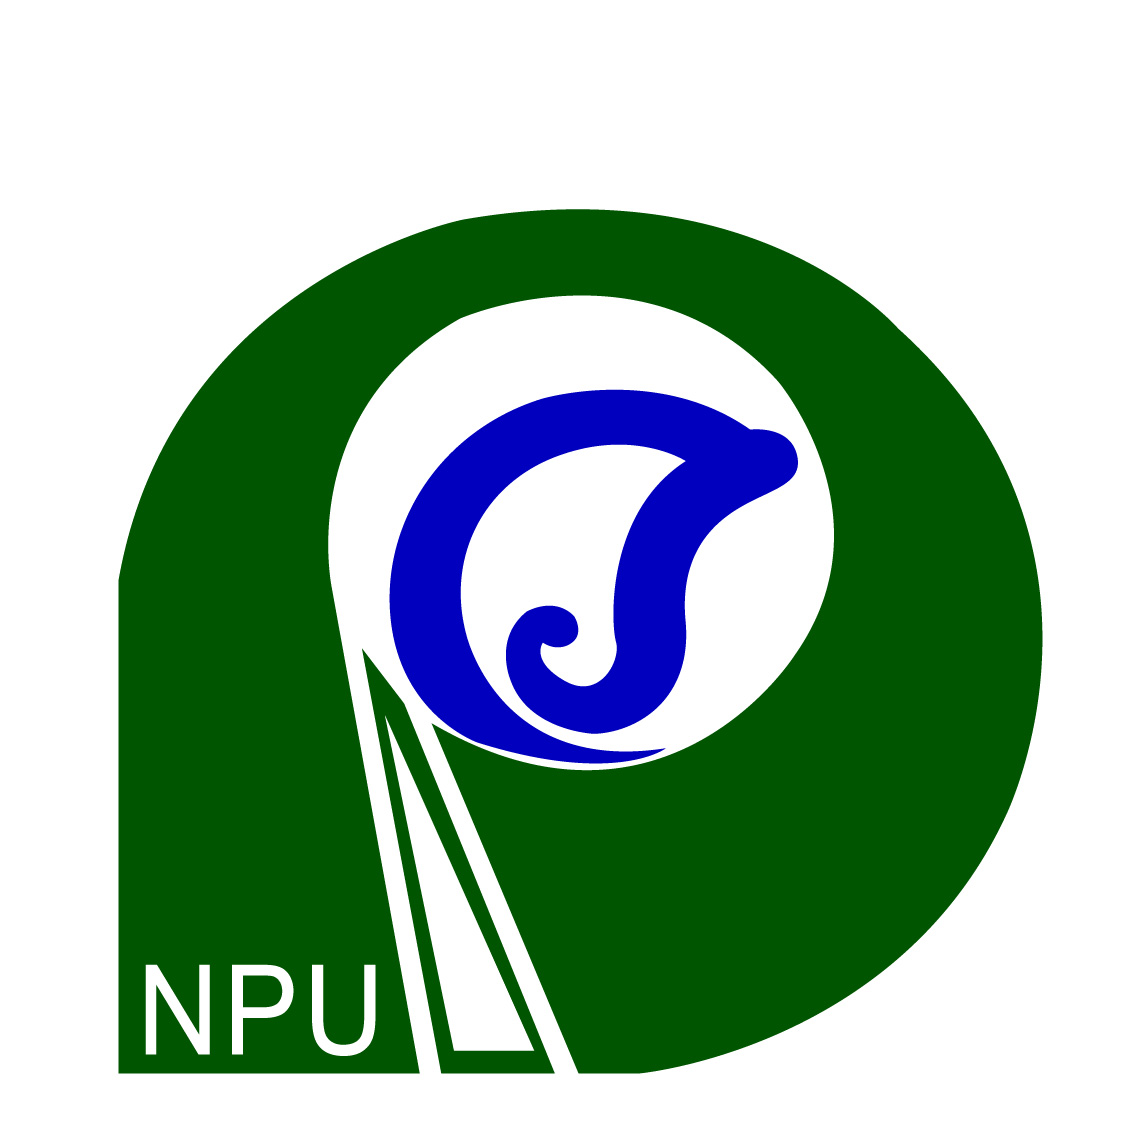 University Emblem